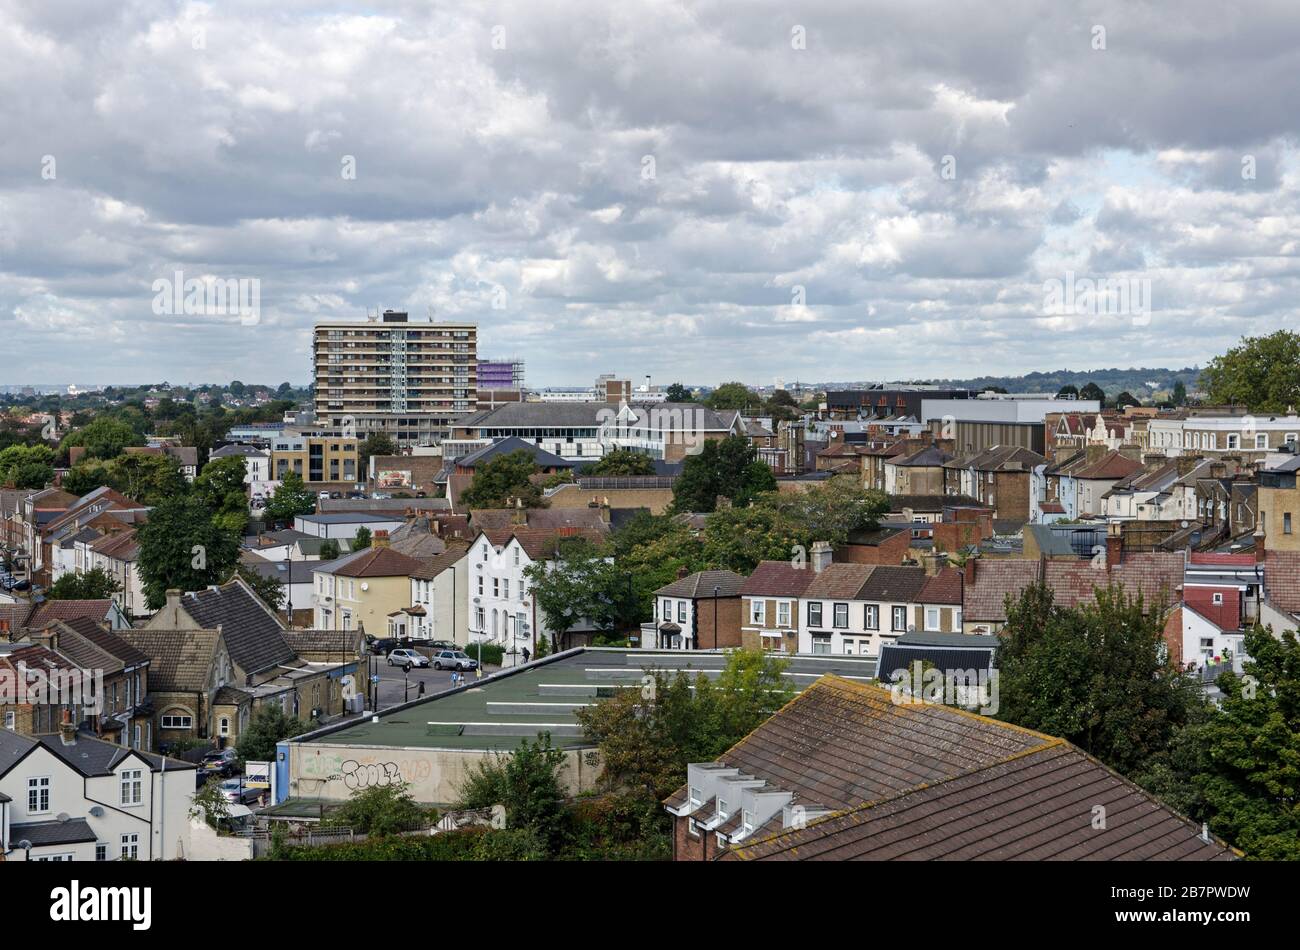 Blick von einem hohen Gebäude über Häuser und Wohnungen direkt nördlich vom Stadtzentrum von Croydon. Stockfoto